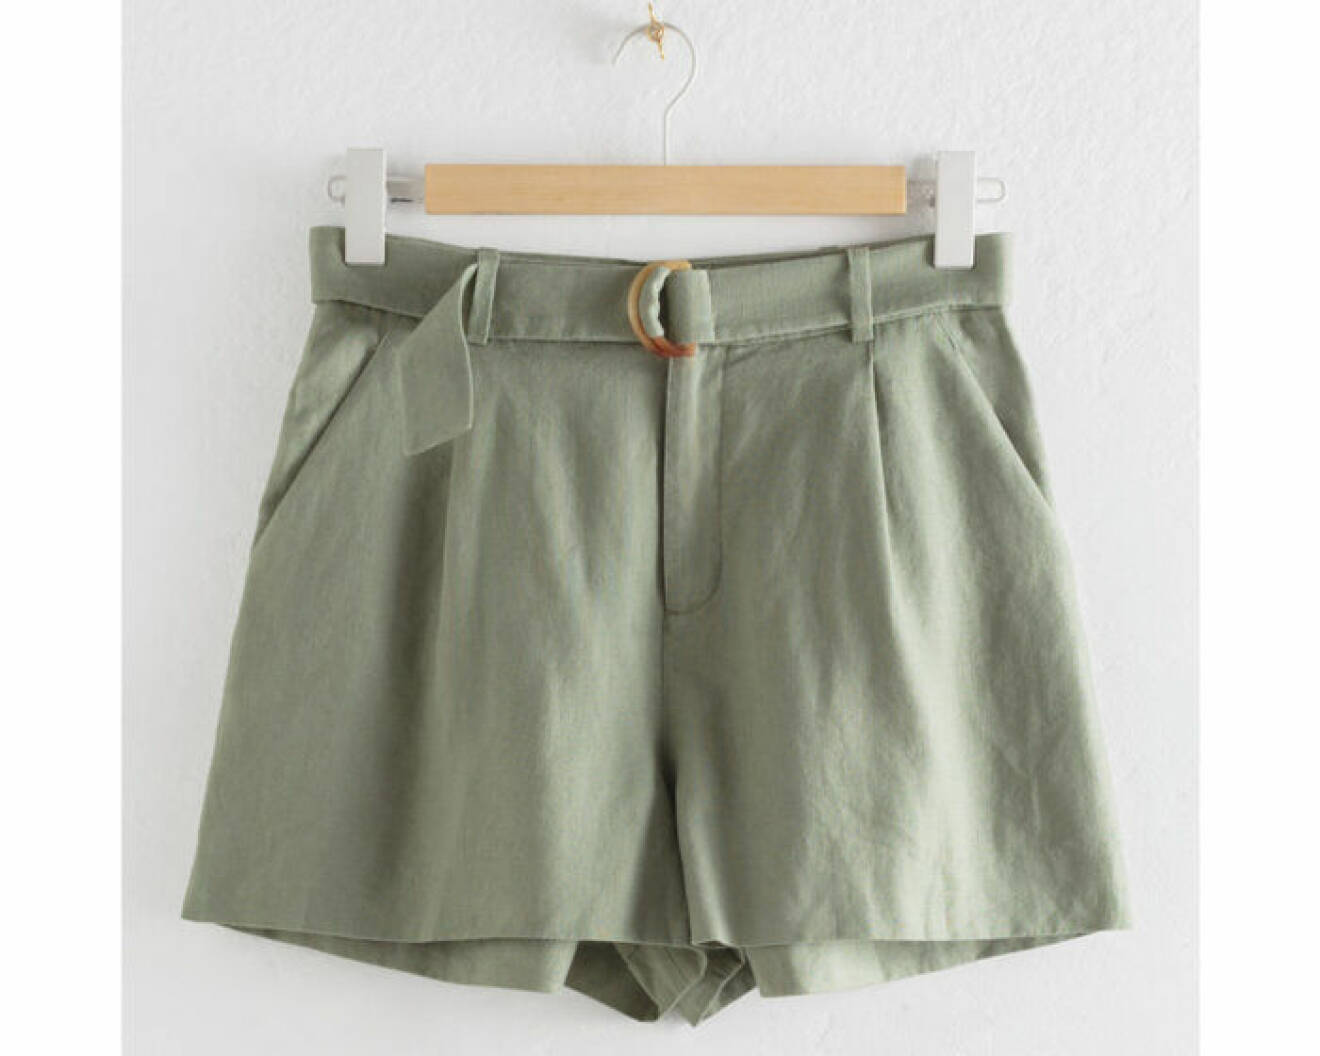 Gröna shorts med bälte i midjan